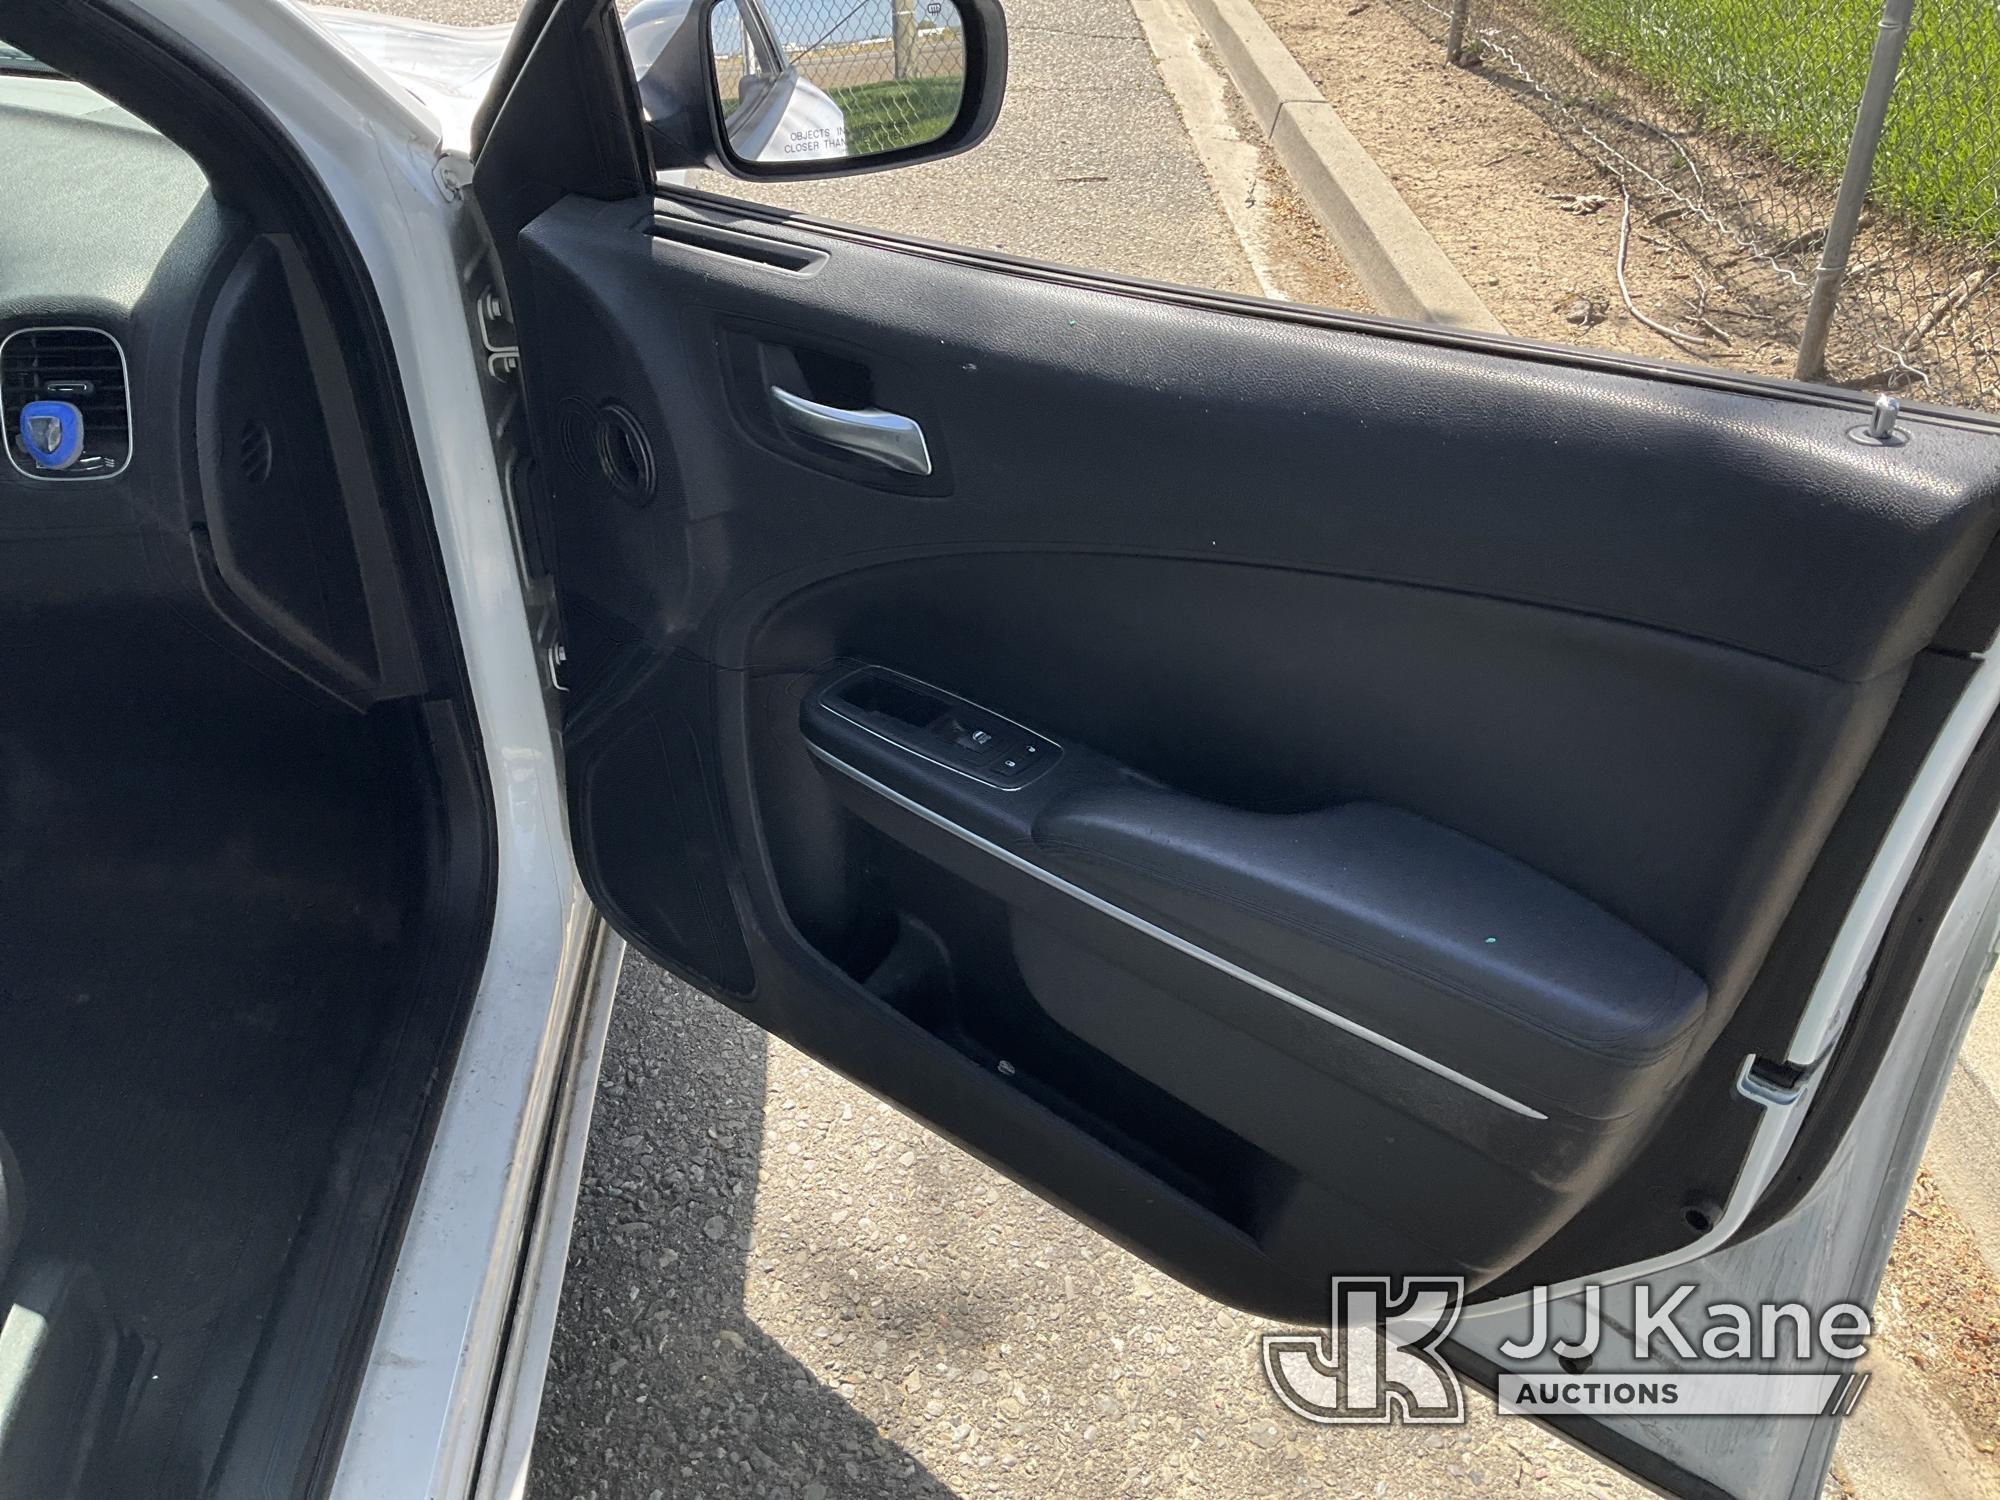 (Dixon, CA) 2019 Dodge Charger 4-Door Sedan Runs & Moves